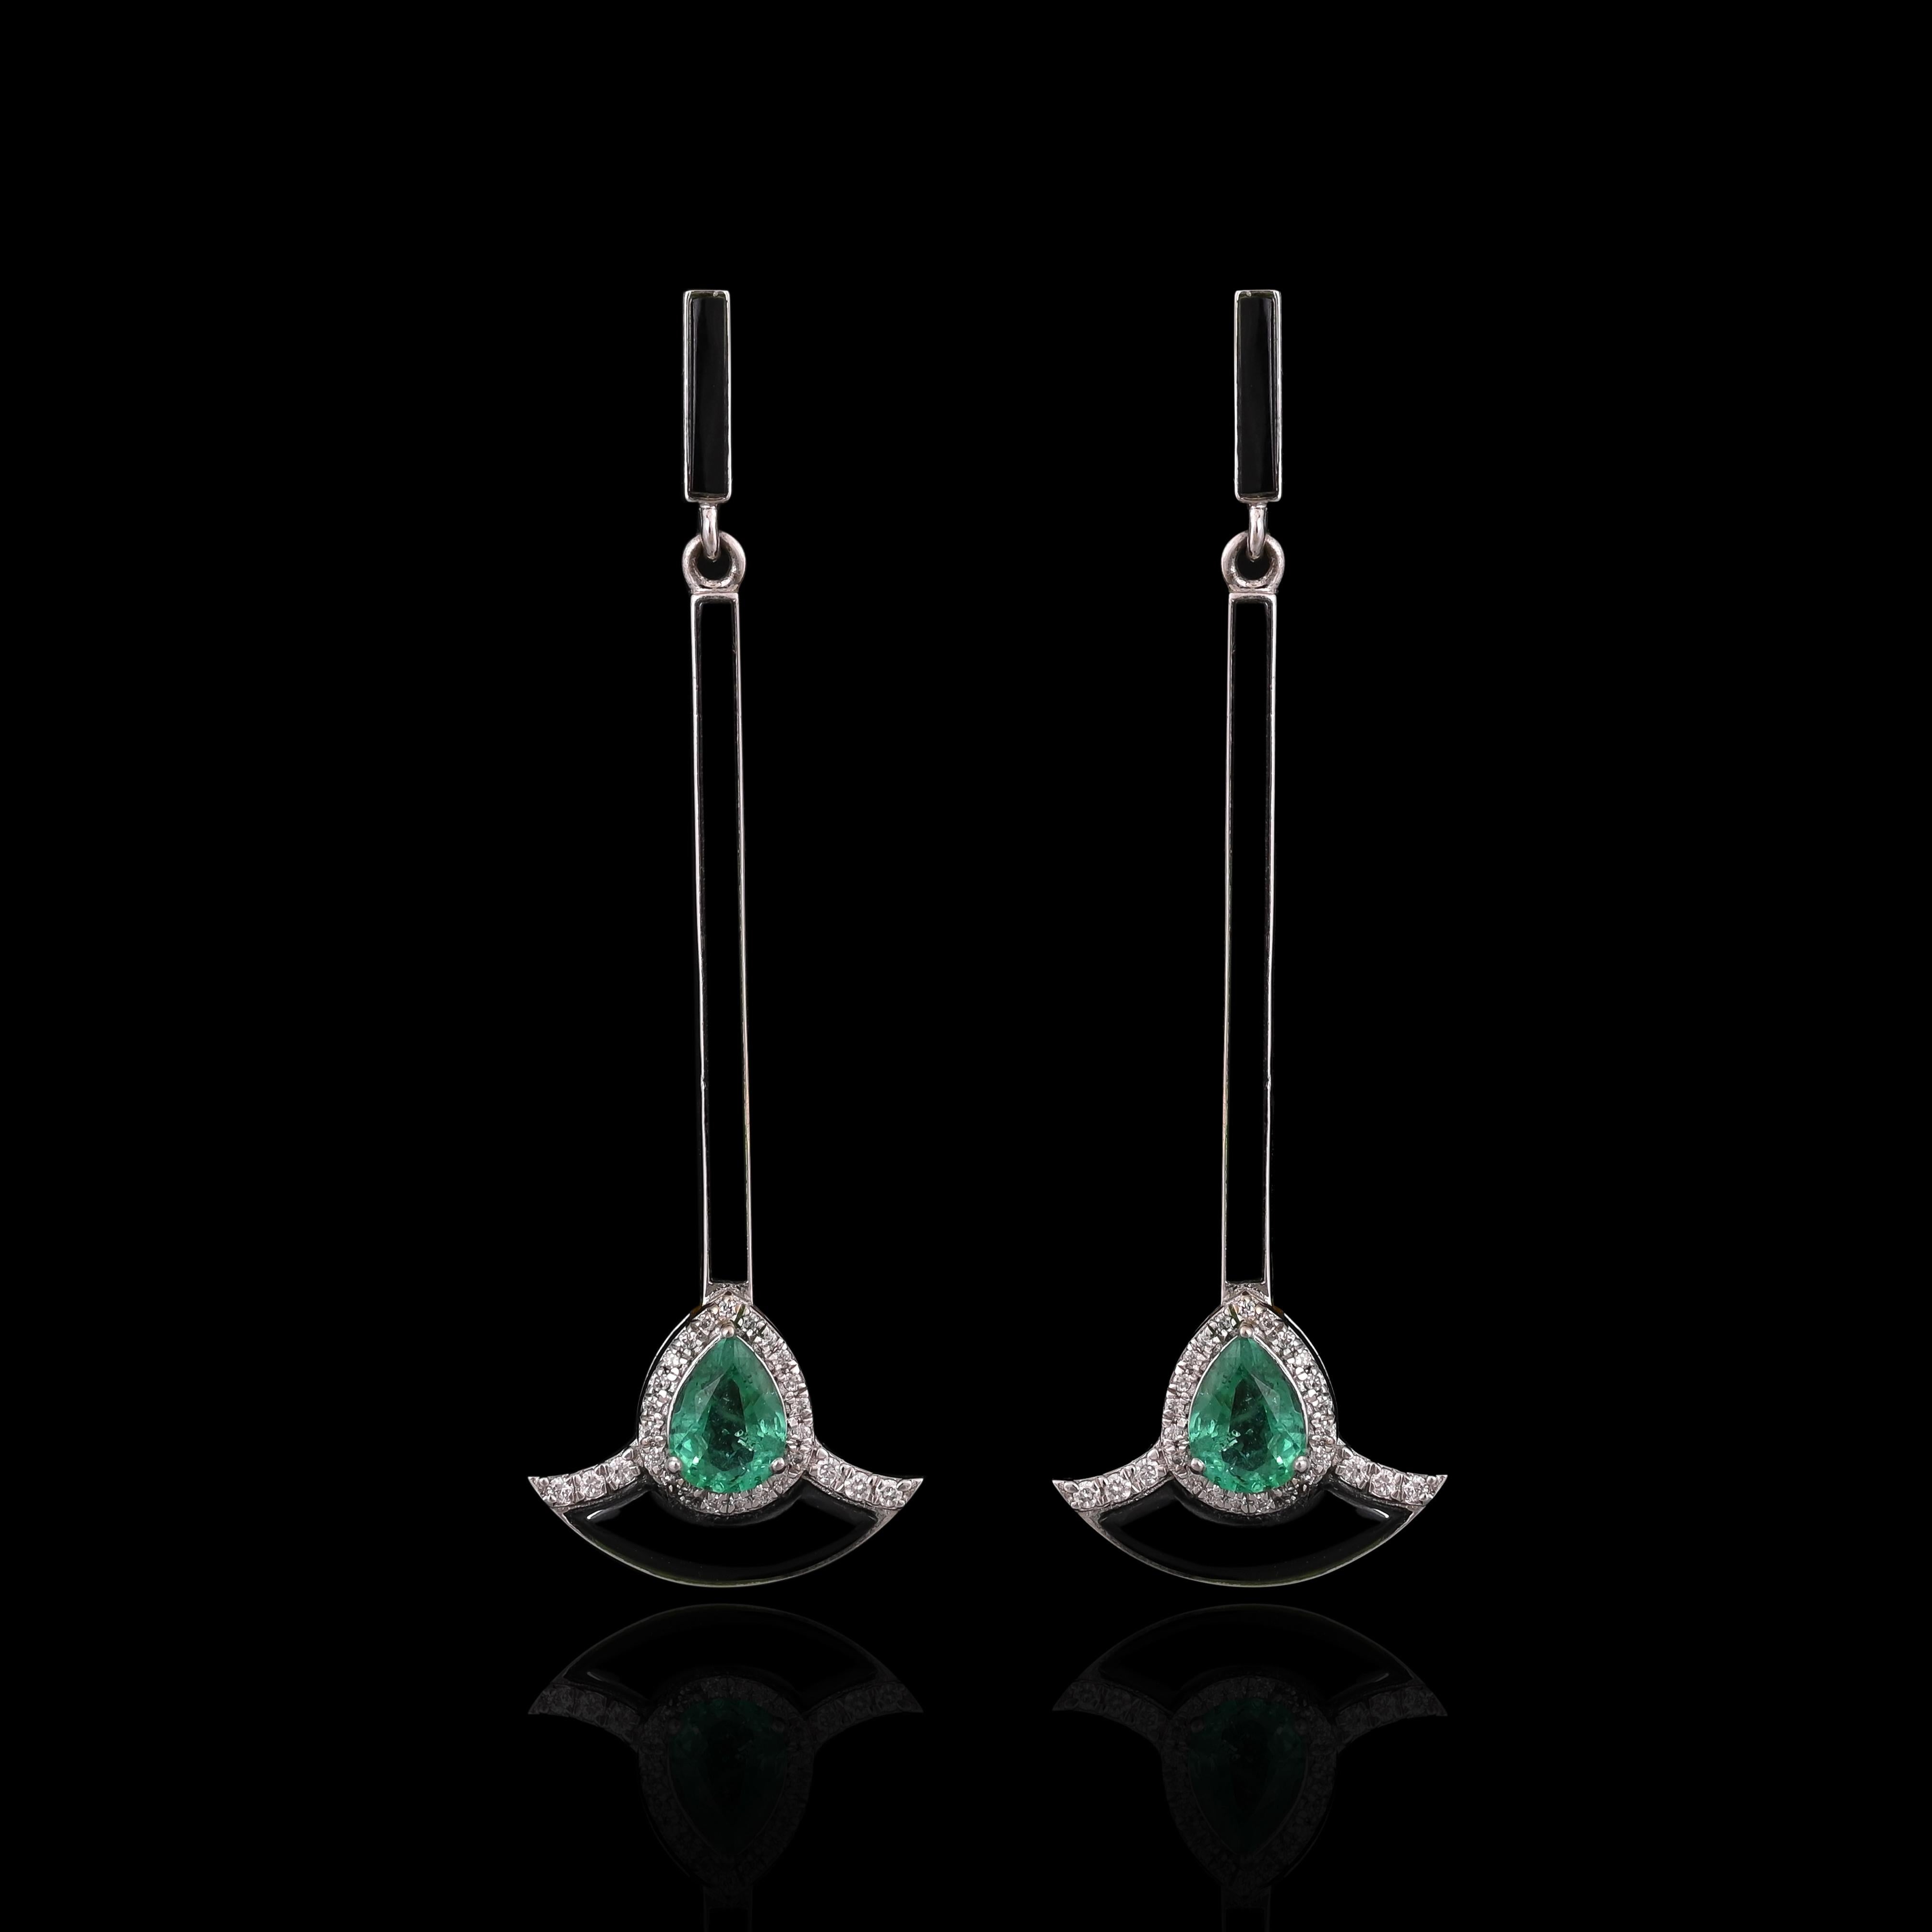 Eine sehr schöne und Art Deco-Stil, Smaragd Kronleuchter / Dangle Ohrringe in 18K Gold & Diamanten gesetzt. Das Gewicht der Smaragde beträgt 1.21 Karat. Die Smaragde sind völlig natürlich, ohne jegliche Behandlung und sind sambischen Ursprungs. Das